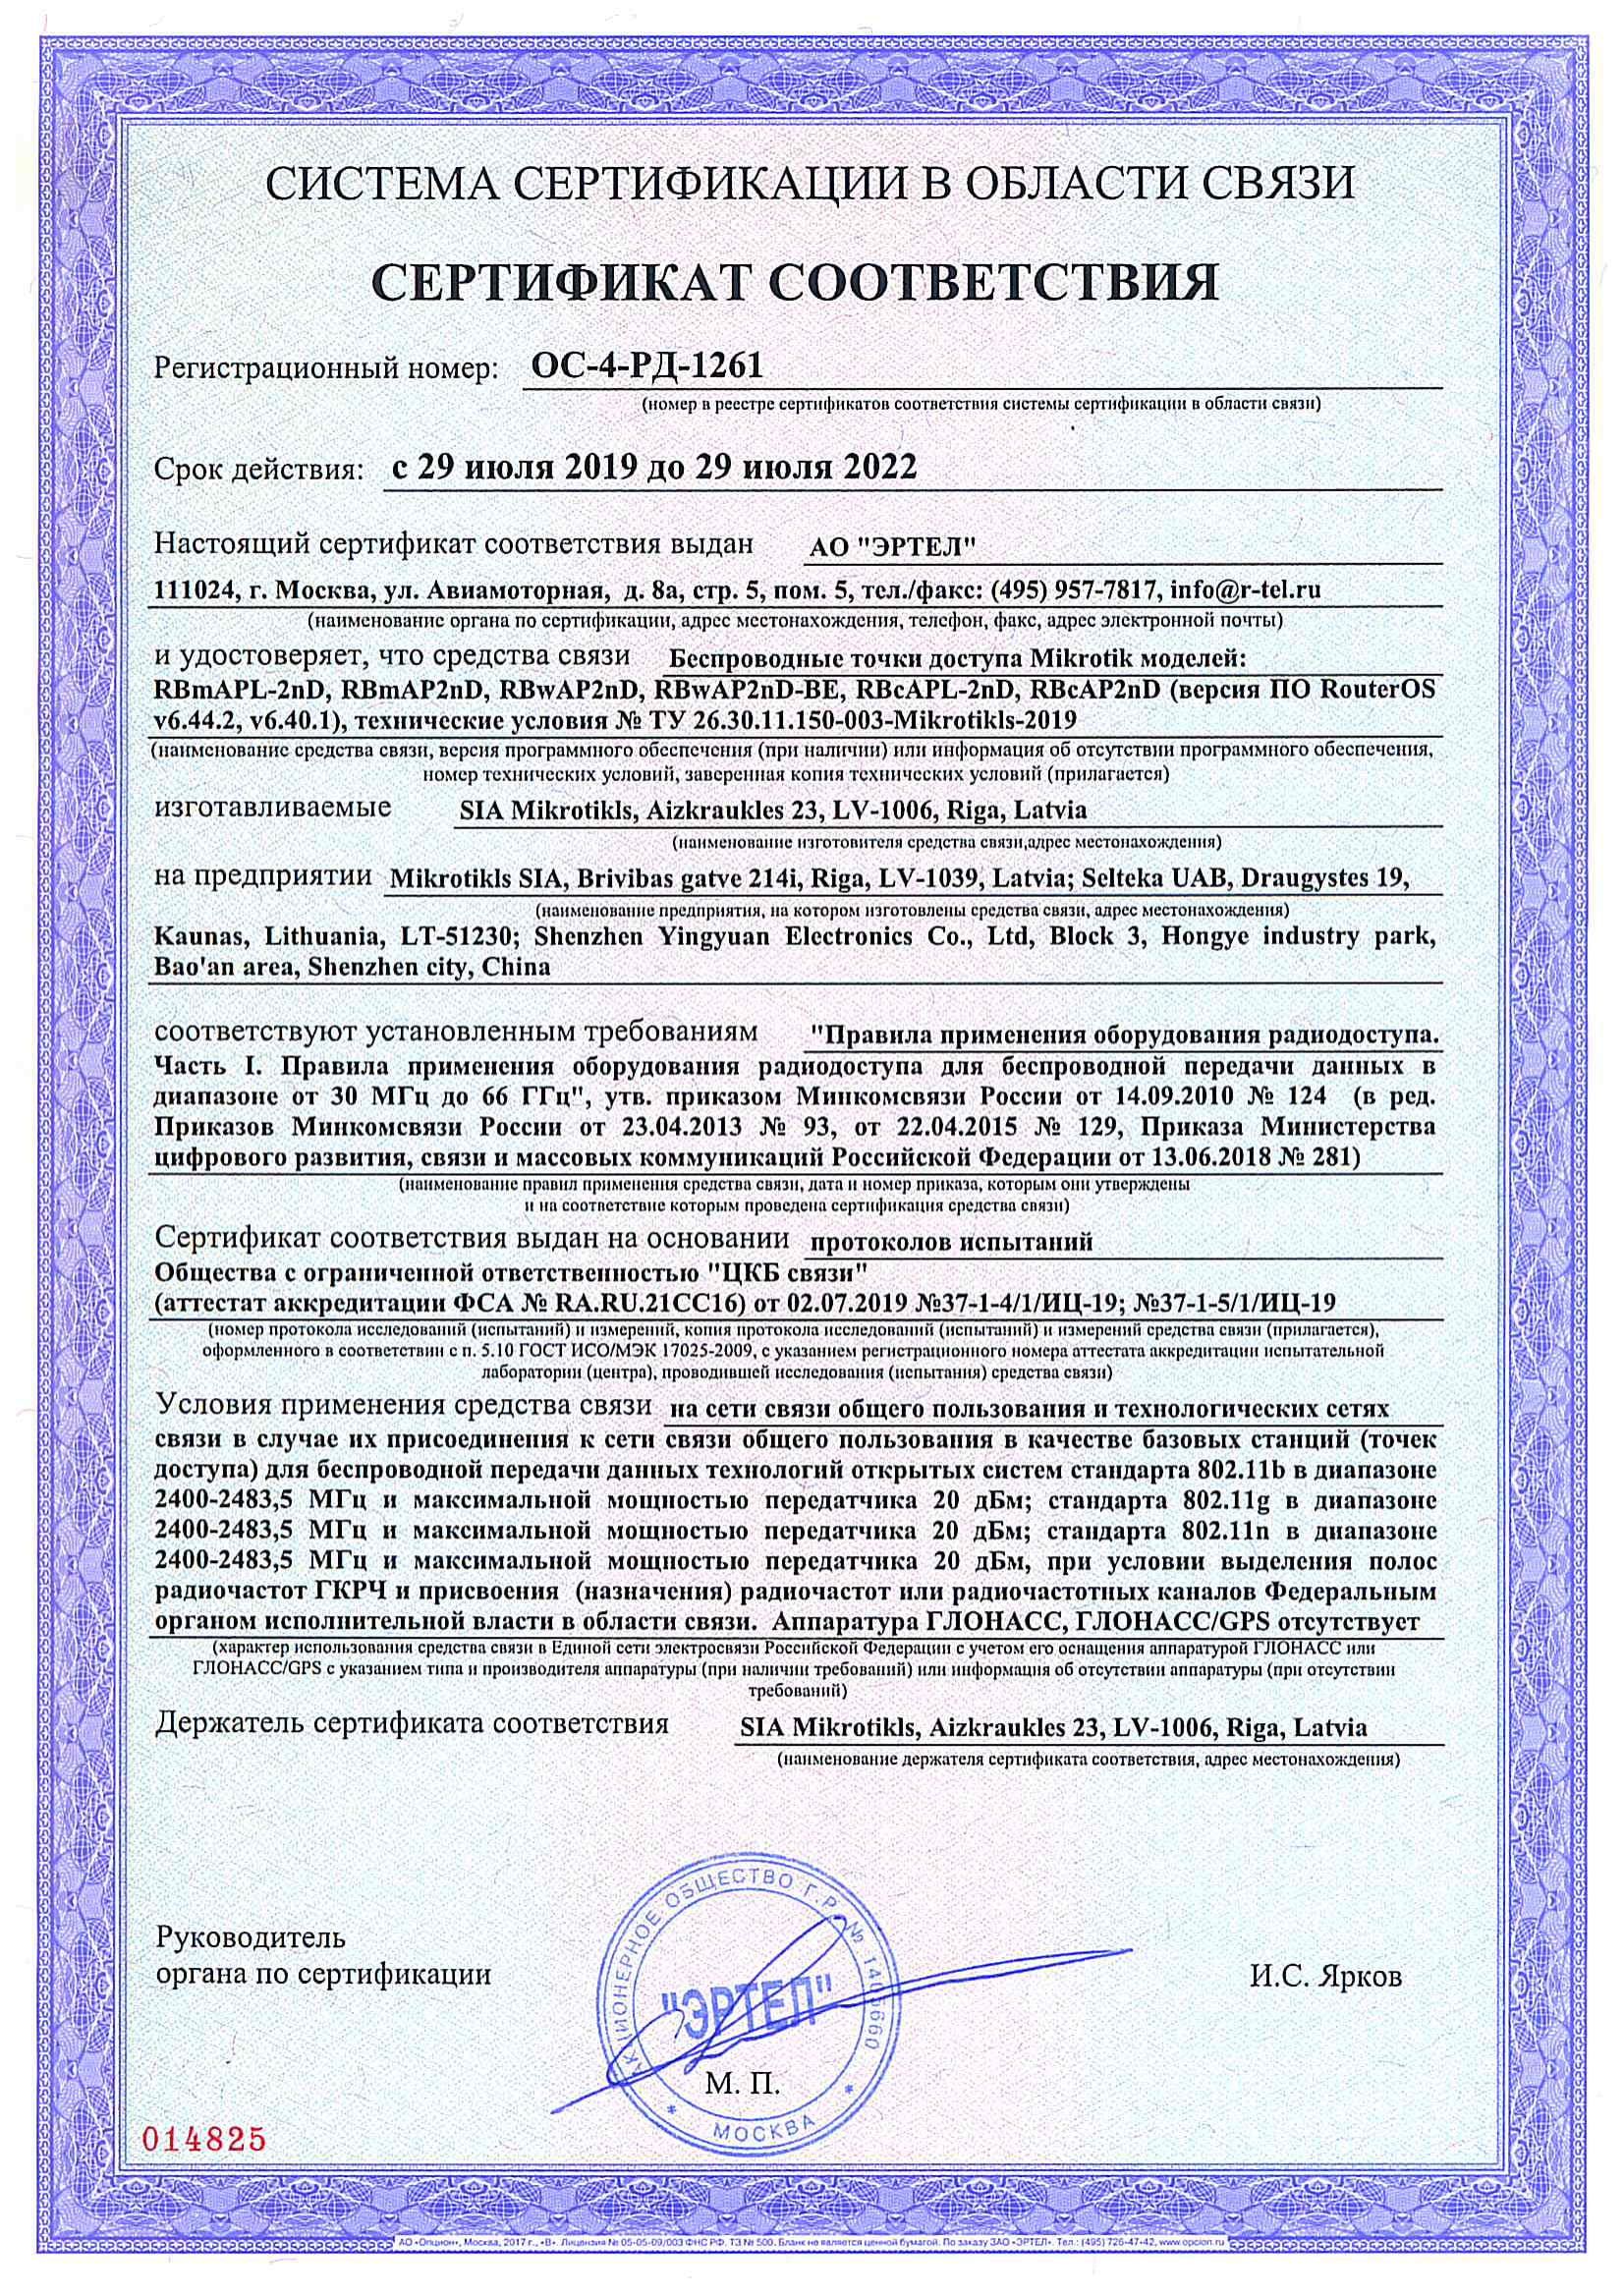 Сертификат соответствия в области связи ОС-4-РД-1261